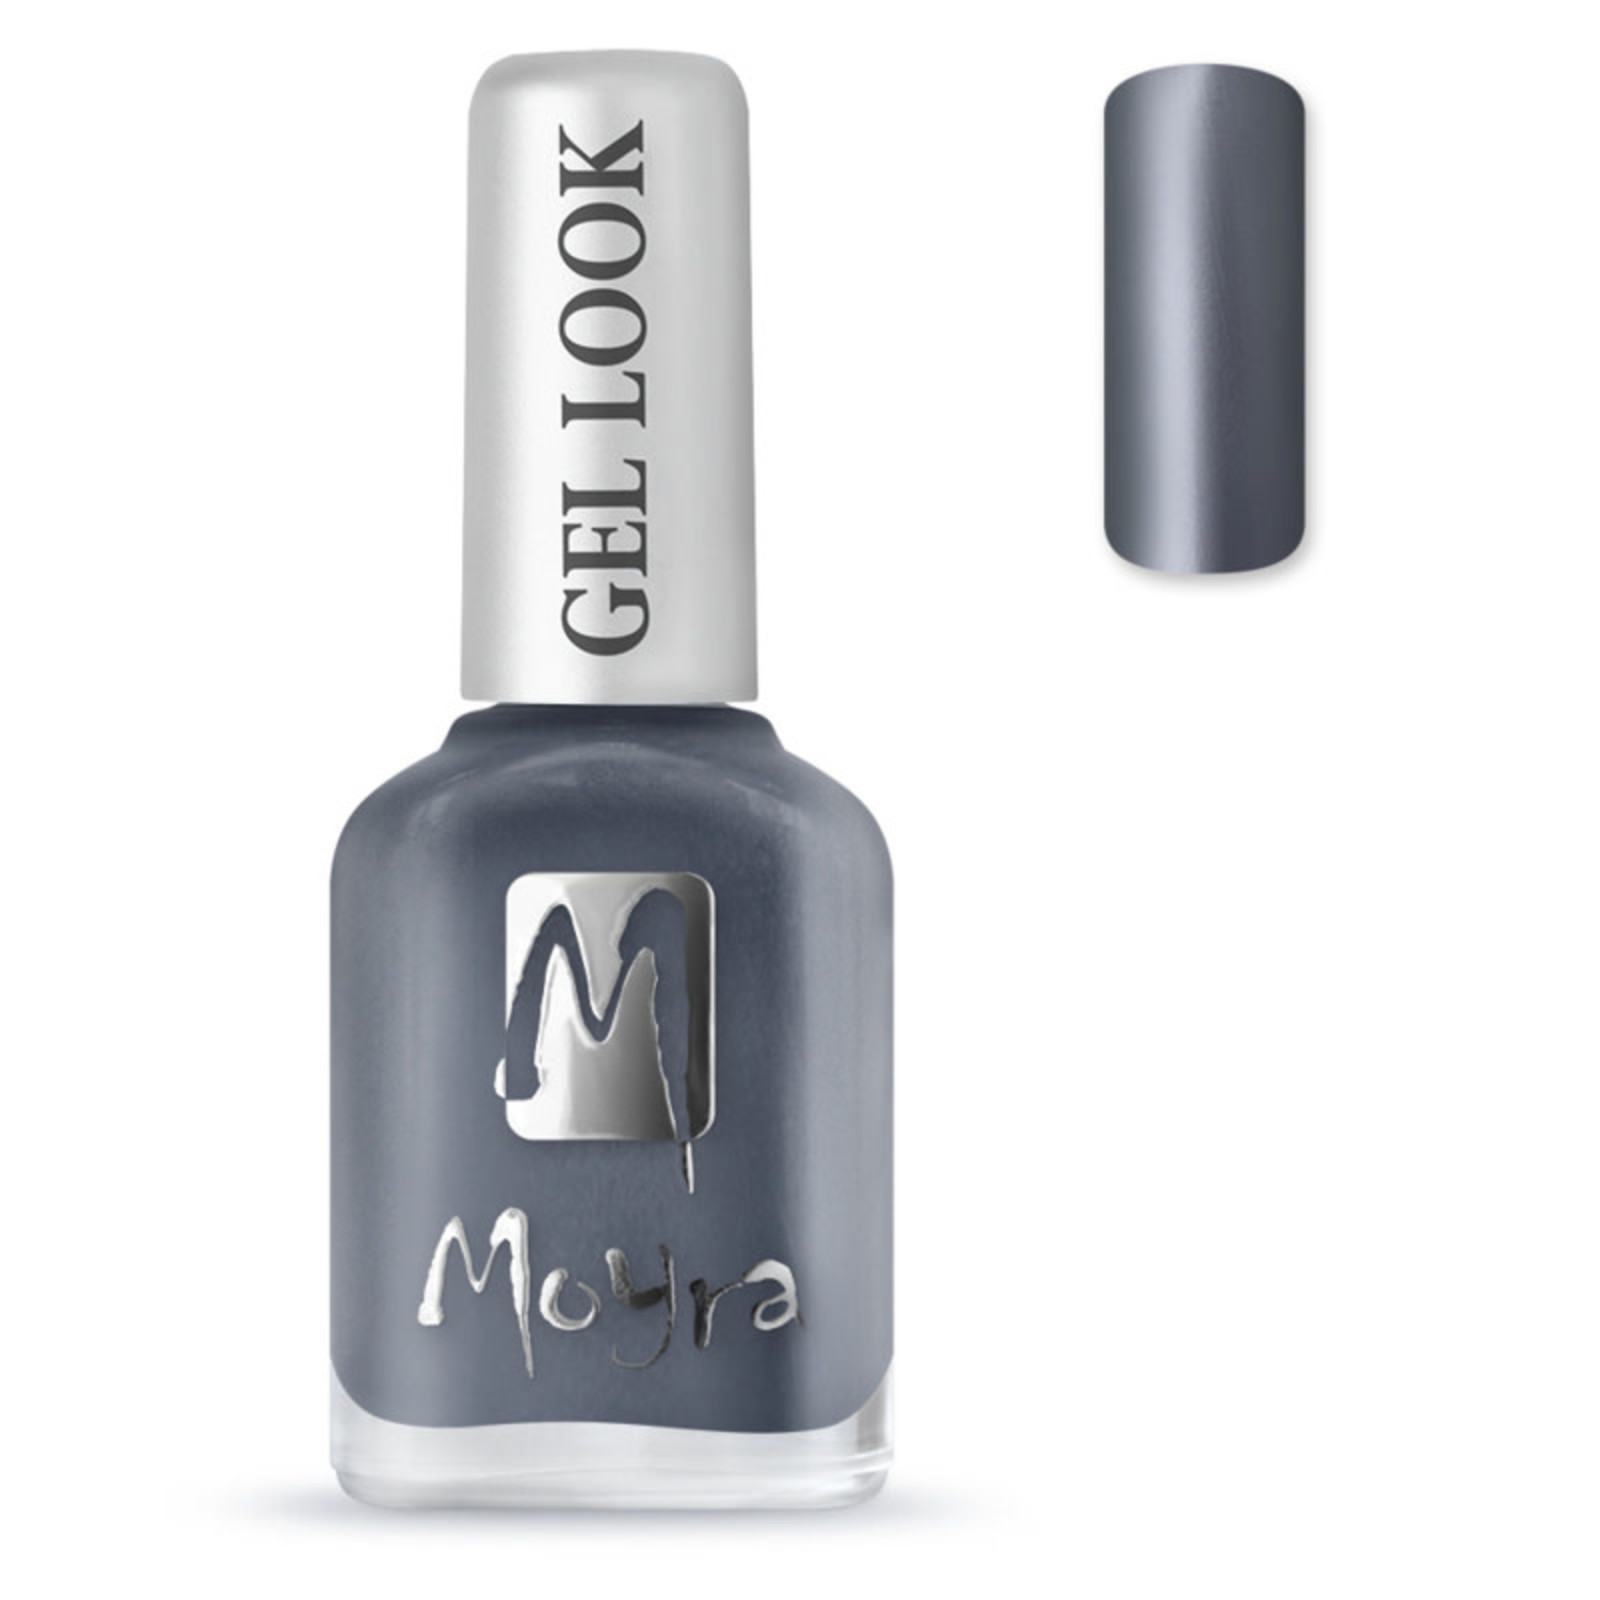 Moyra Moyra nail polish gel look 1016